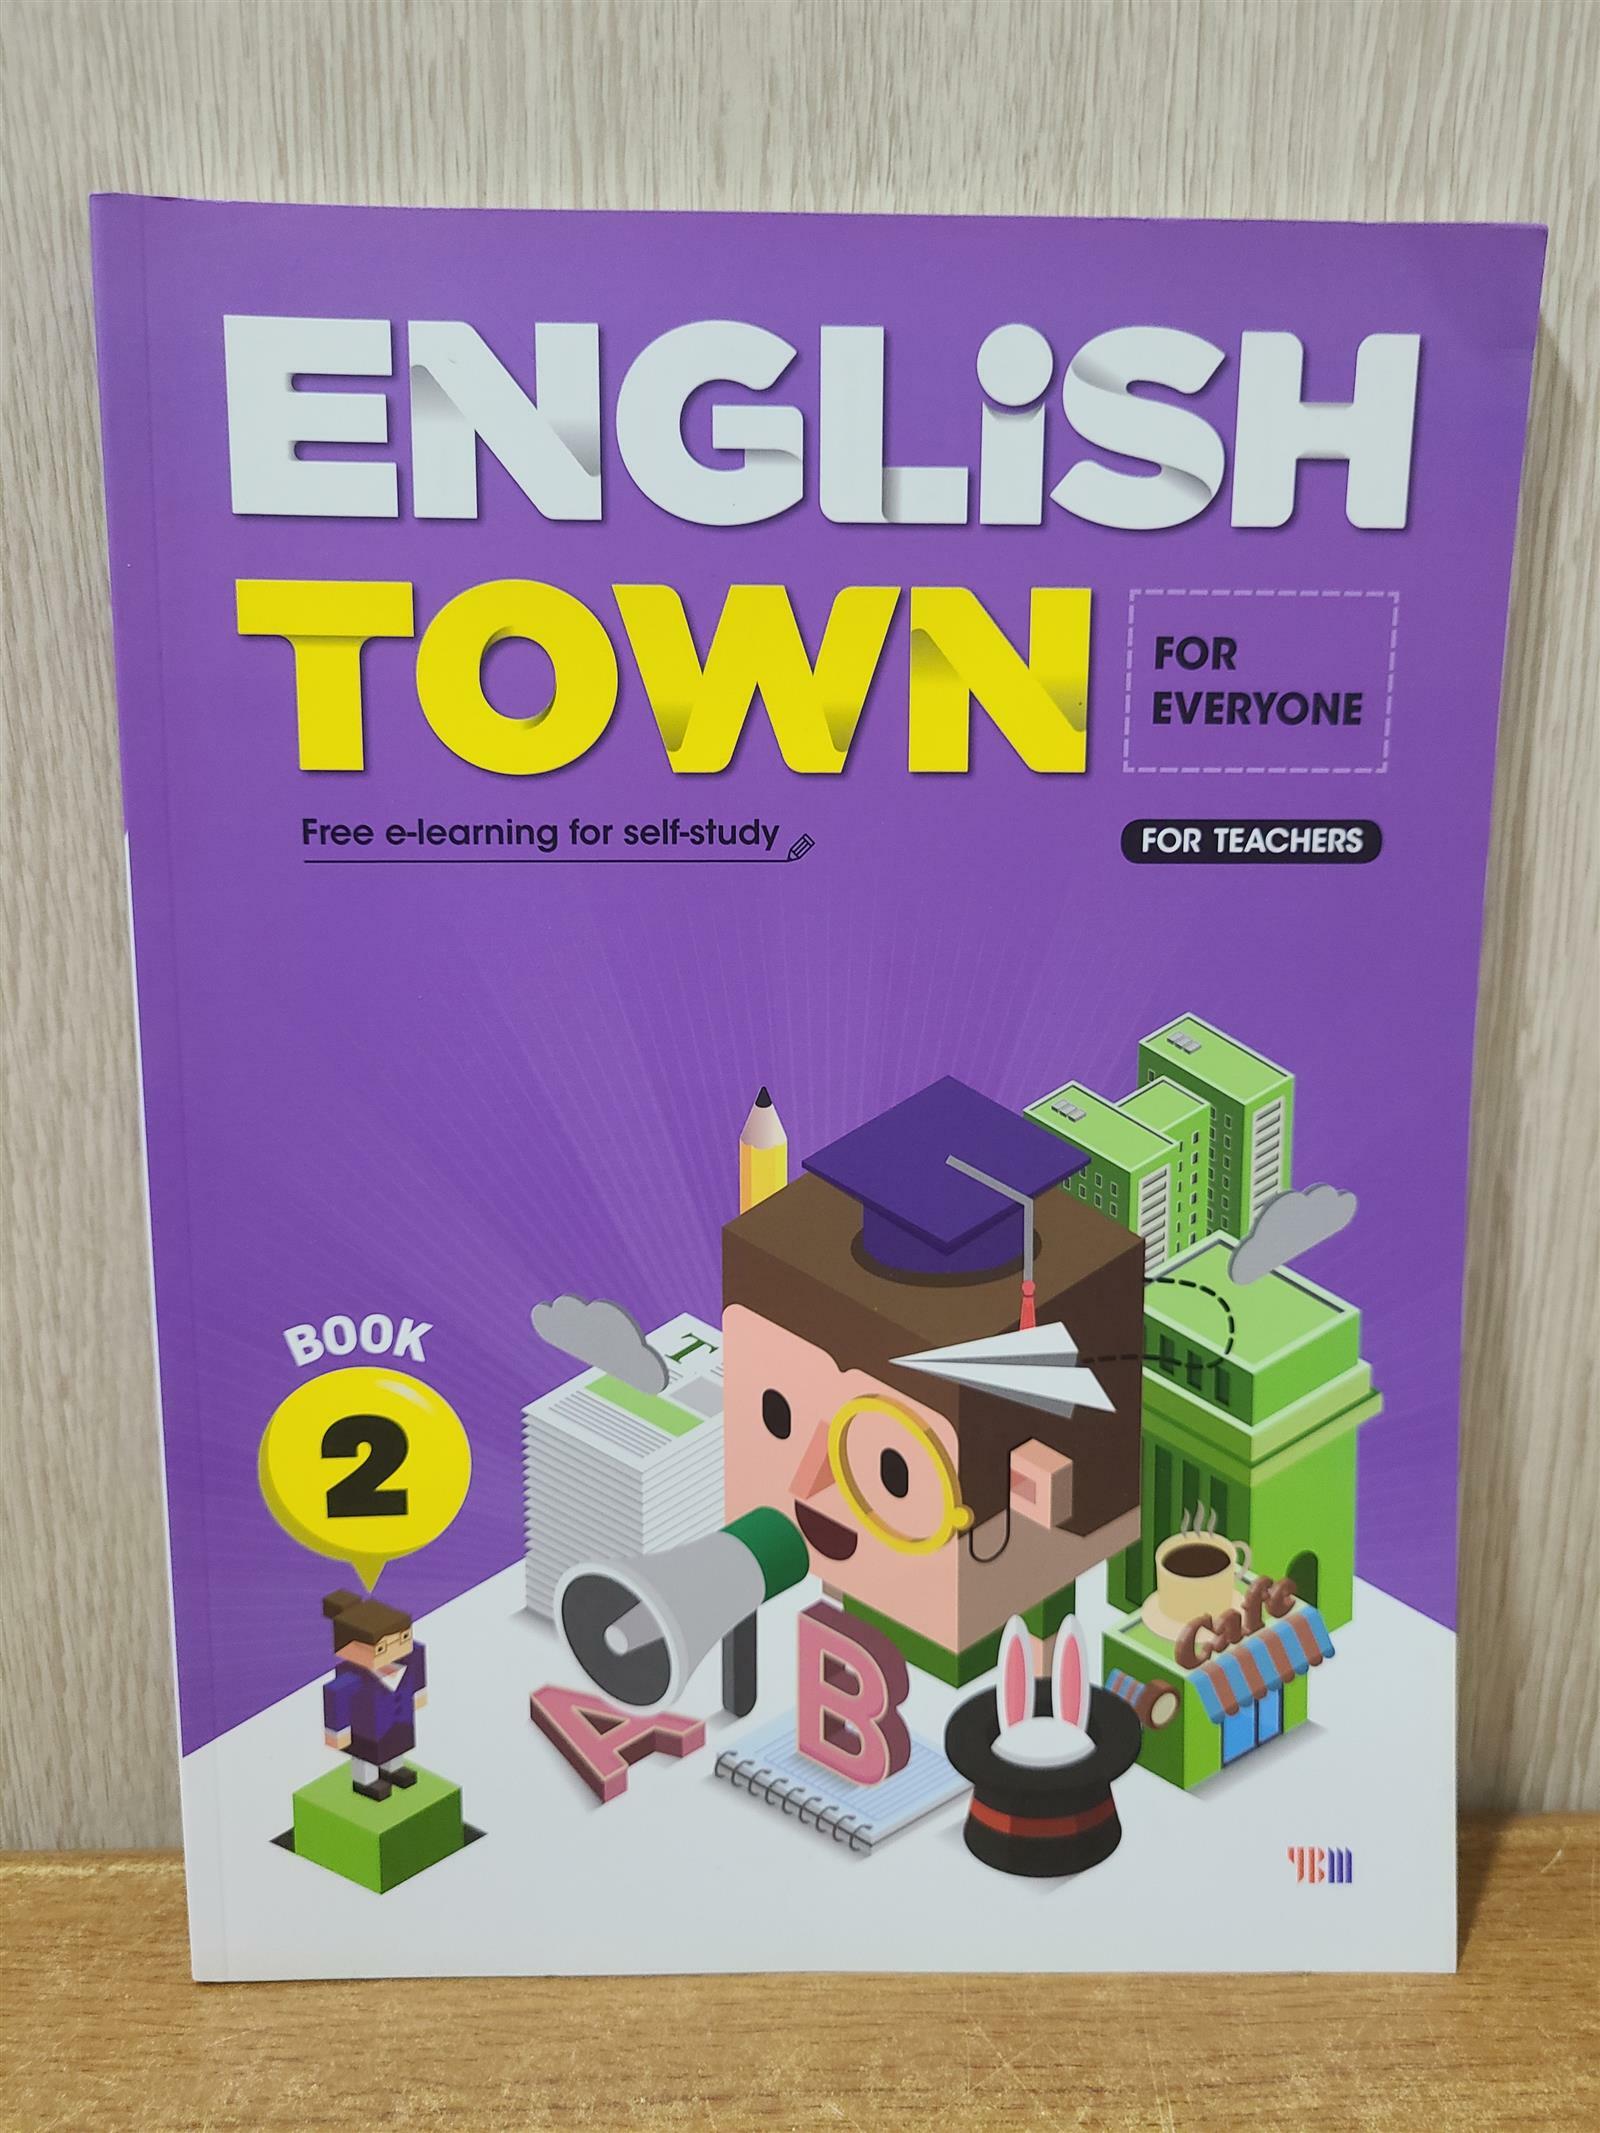 [중고] English Town Book 2 (For Everyone)  | English Town Book 2 (초등3 ~ 초등6) [ 선생님용 입니다, 참고 바랍니다] 